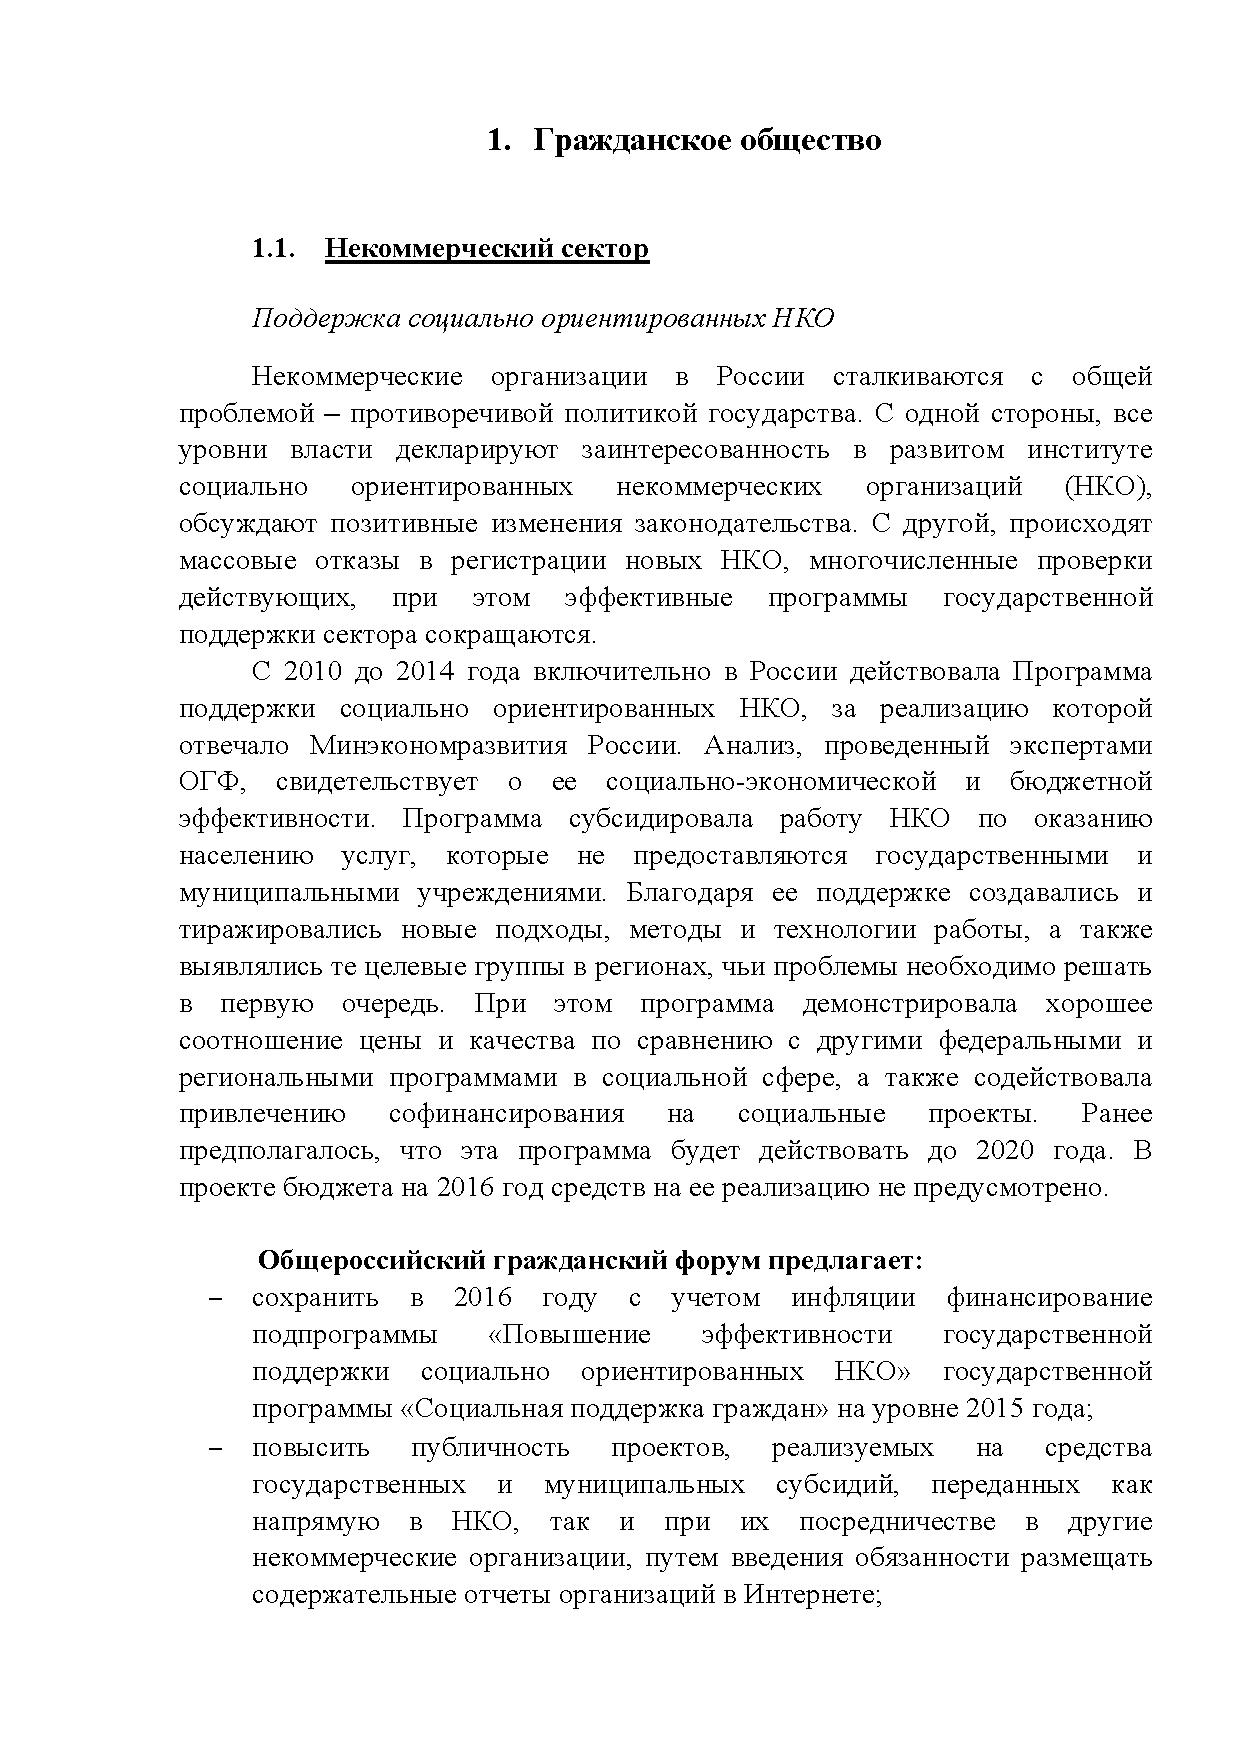  Опубликованы Предложения Общероссийского гражданского форума 2015 - фото 3